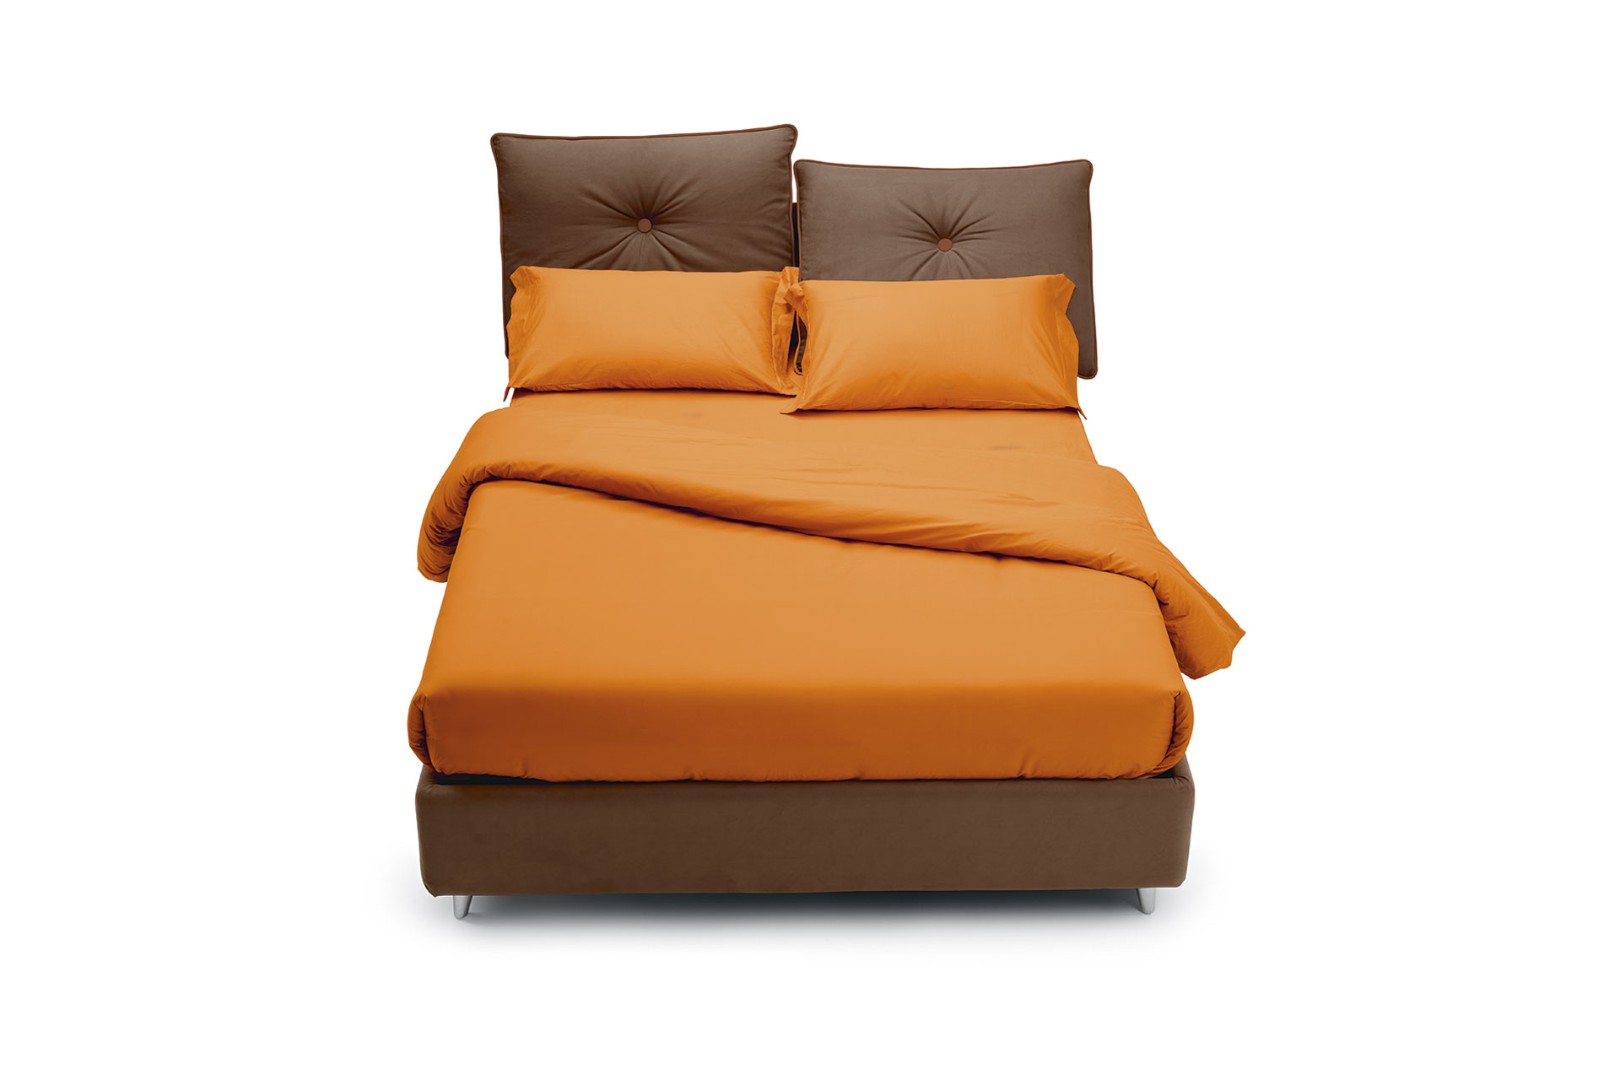 Кровать So Lively — ₽, купить у официального дилера Nicolettihome